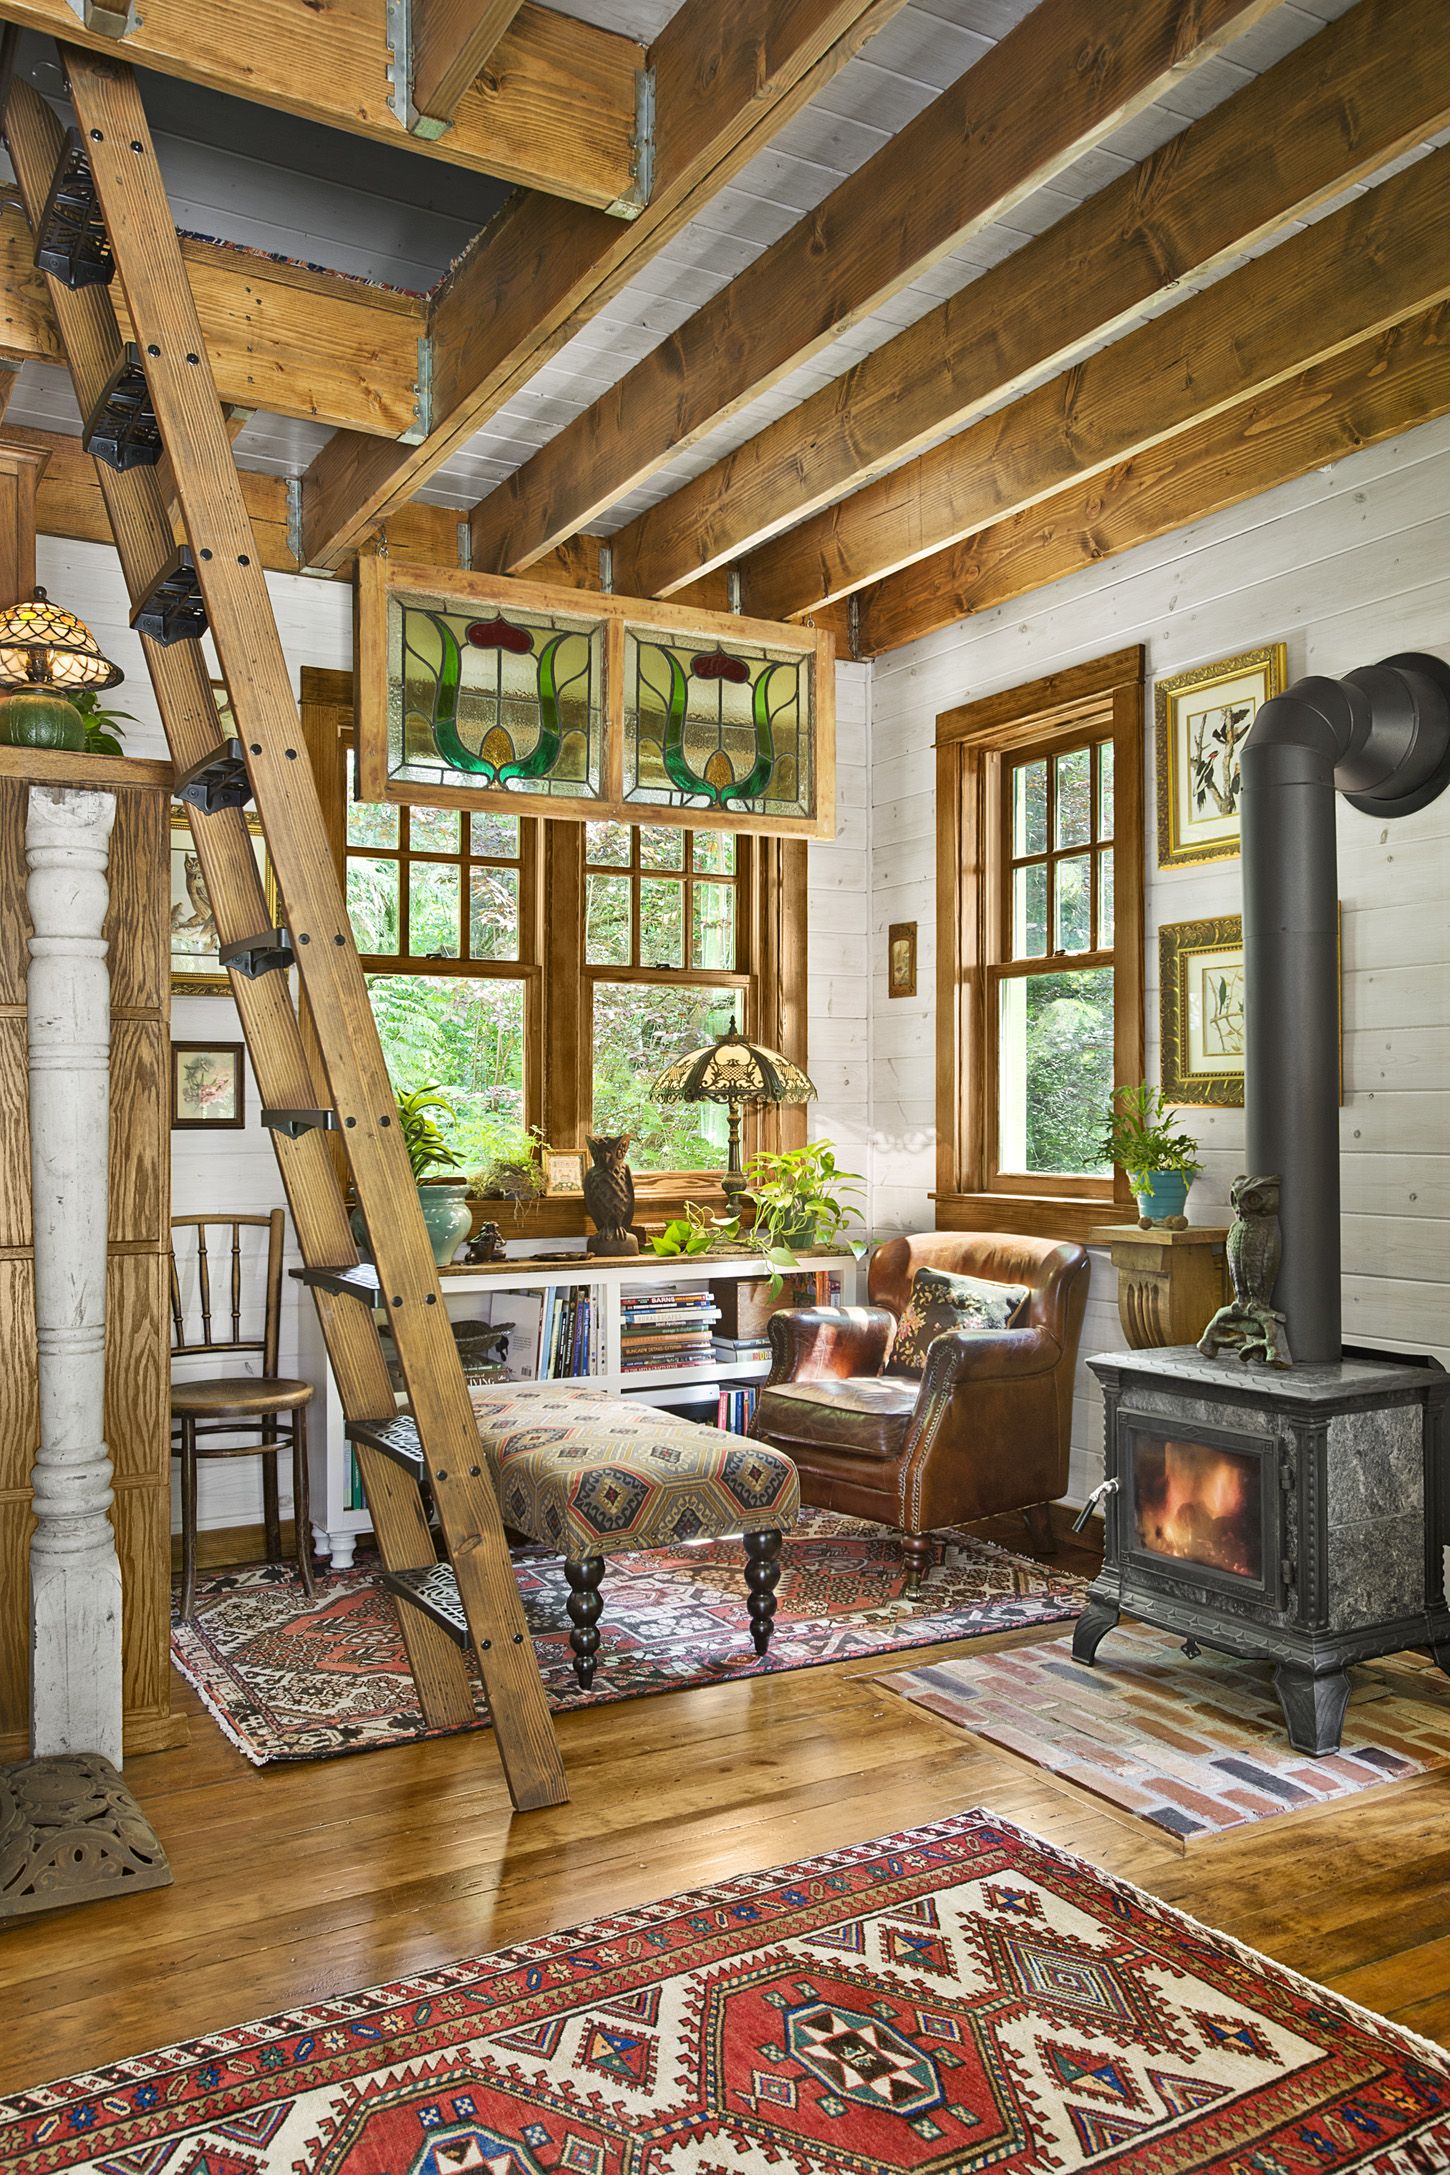 https://hips.hearstapps.com/hmg-prod/images/quaint-little-cabin-living-room-1118-1546895577.jpg